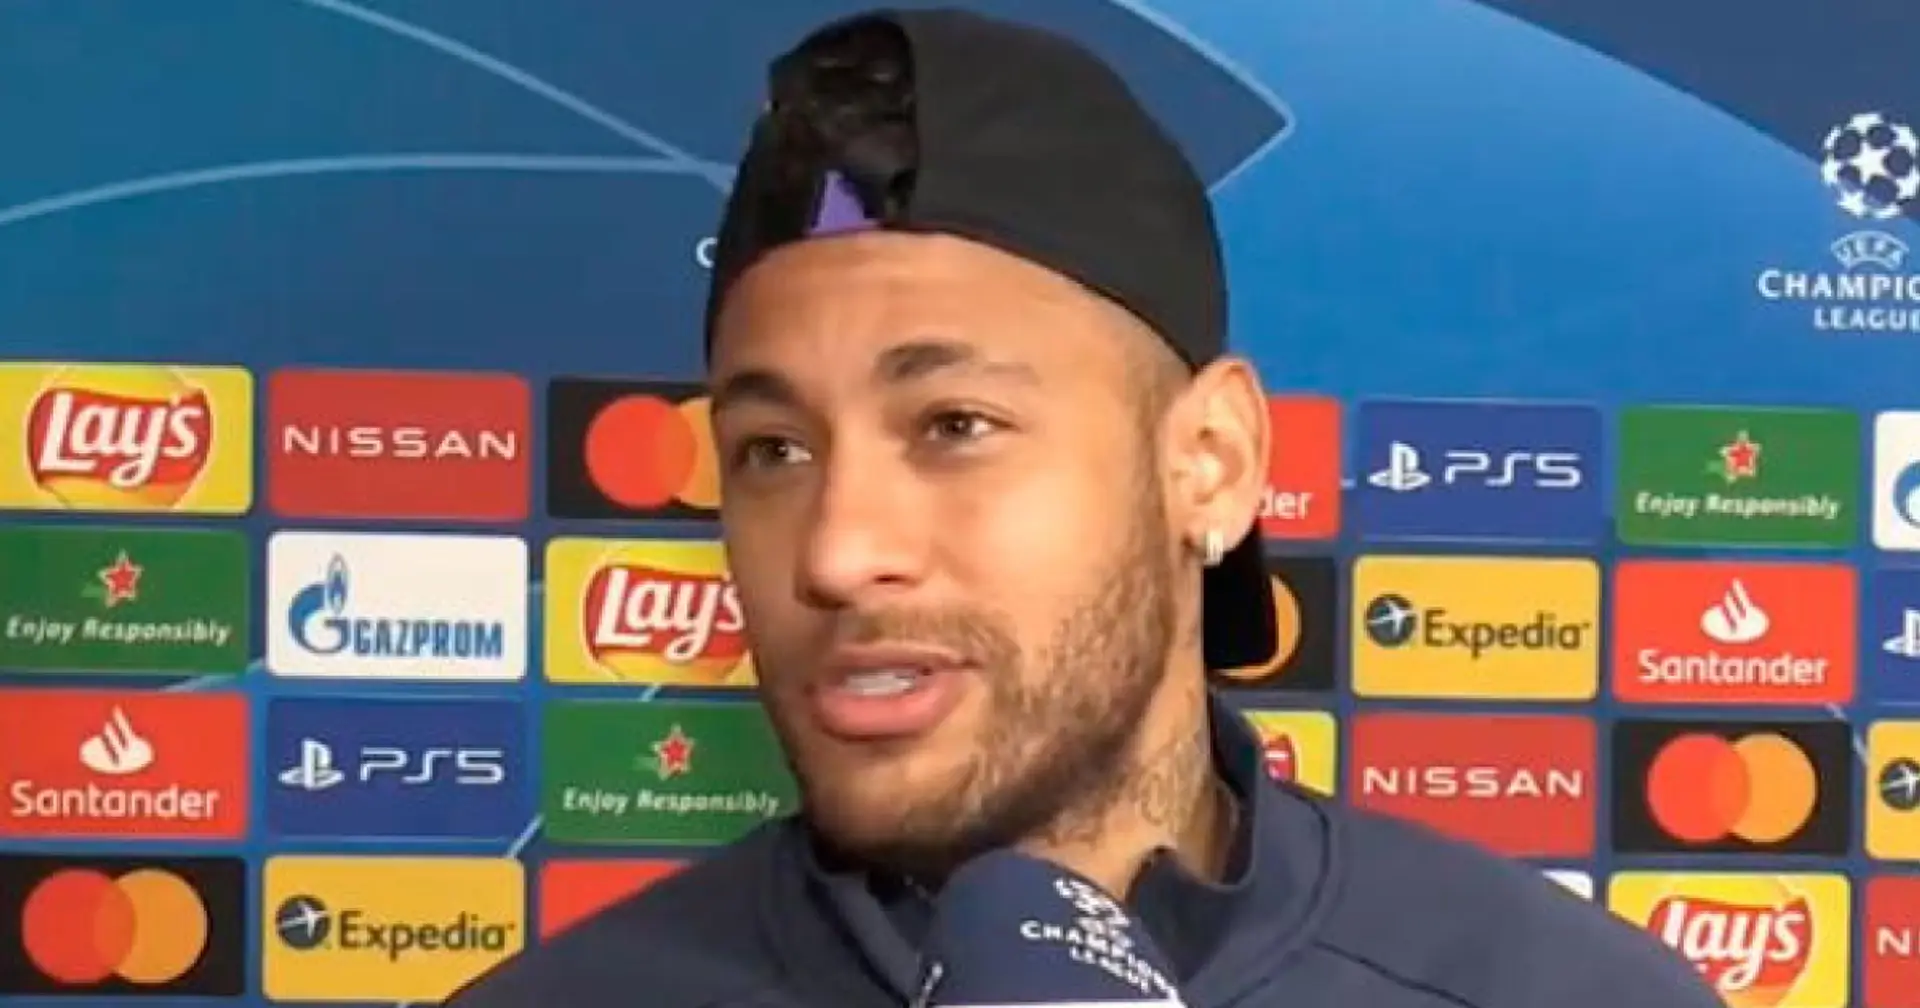 Neymar intenta volver al Barça, el club puede considerar una cesión (fiabilidad: 4 estrellas)